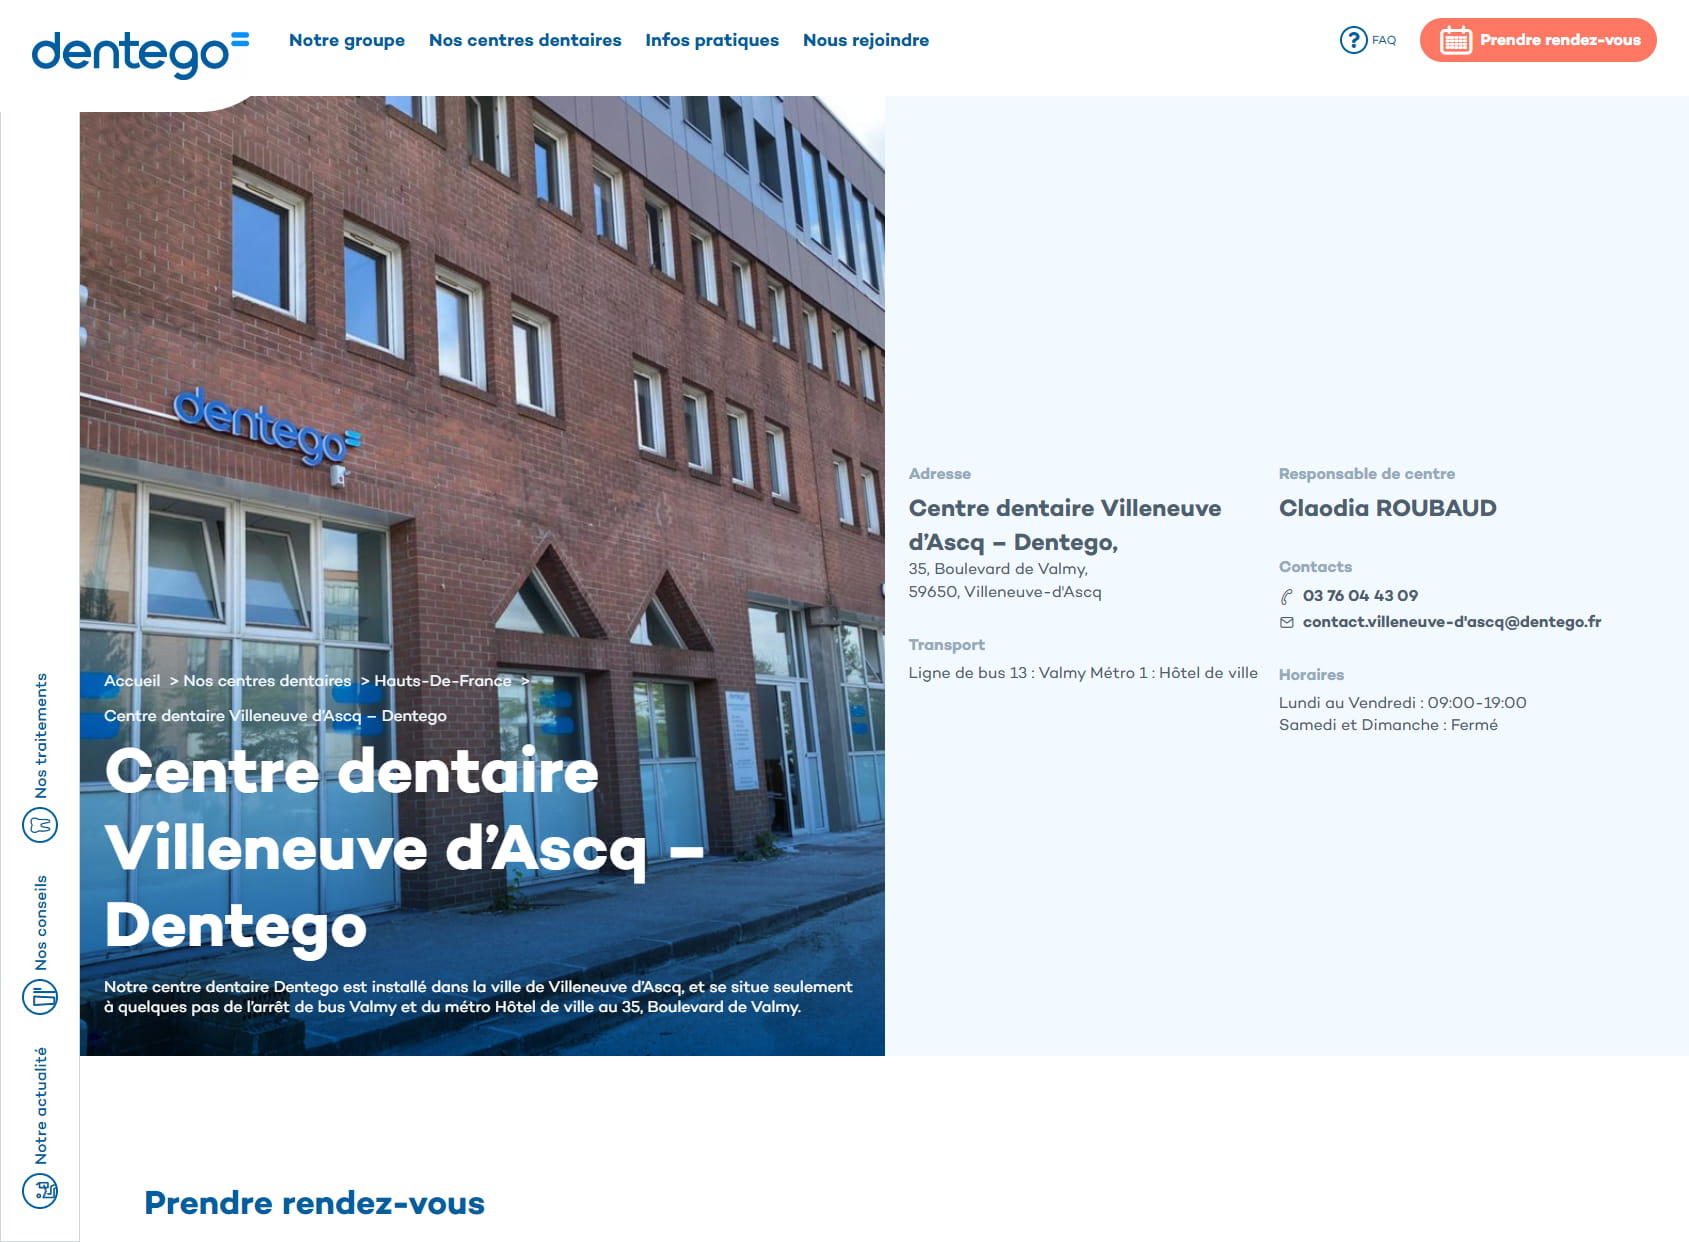 Centre Dentaire Villeneuve d'Ascq : Dentiste Villeneuve d'Ascq - Dentego